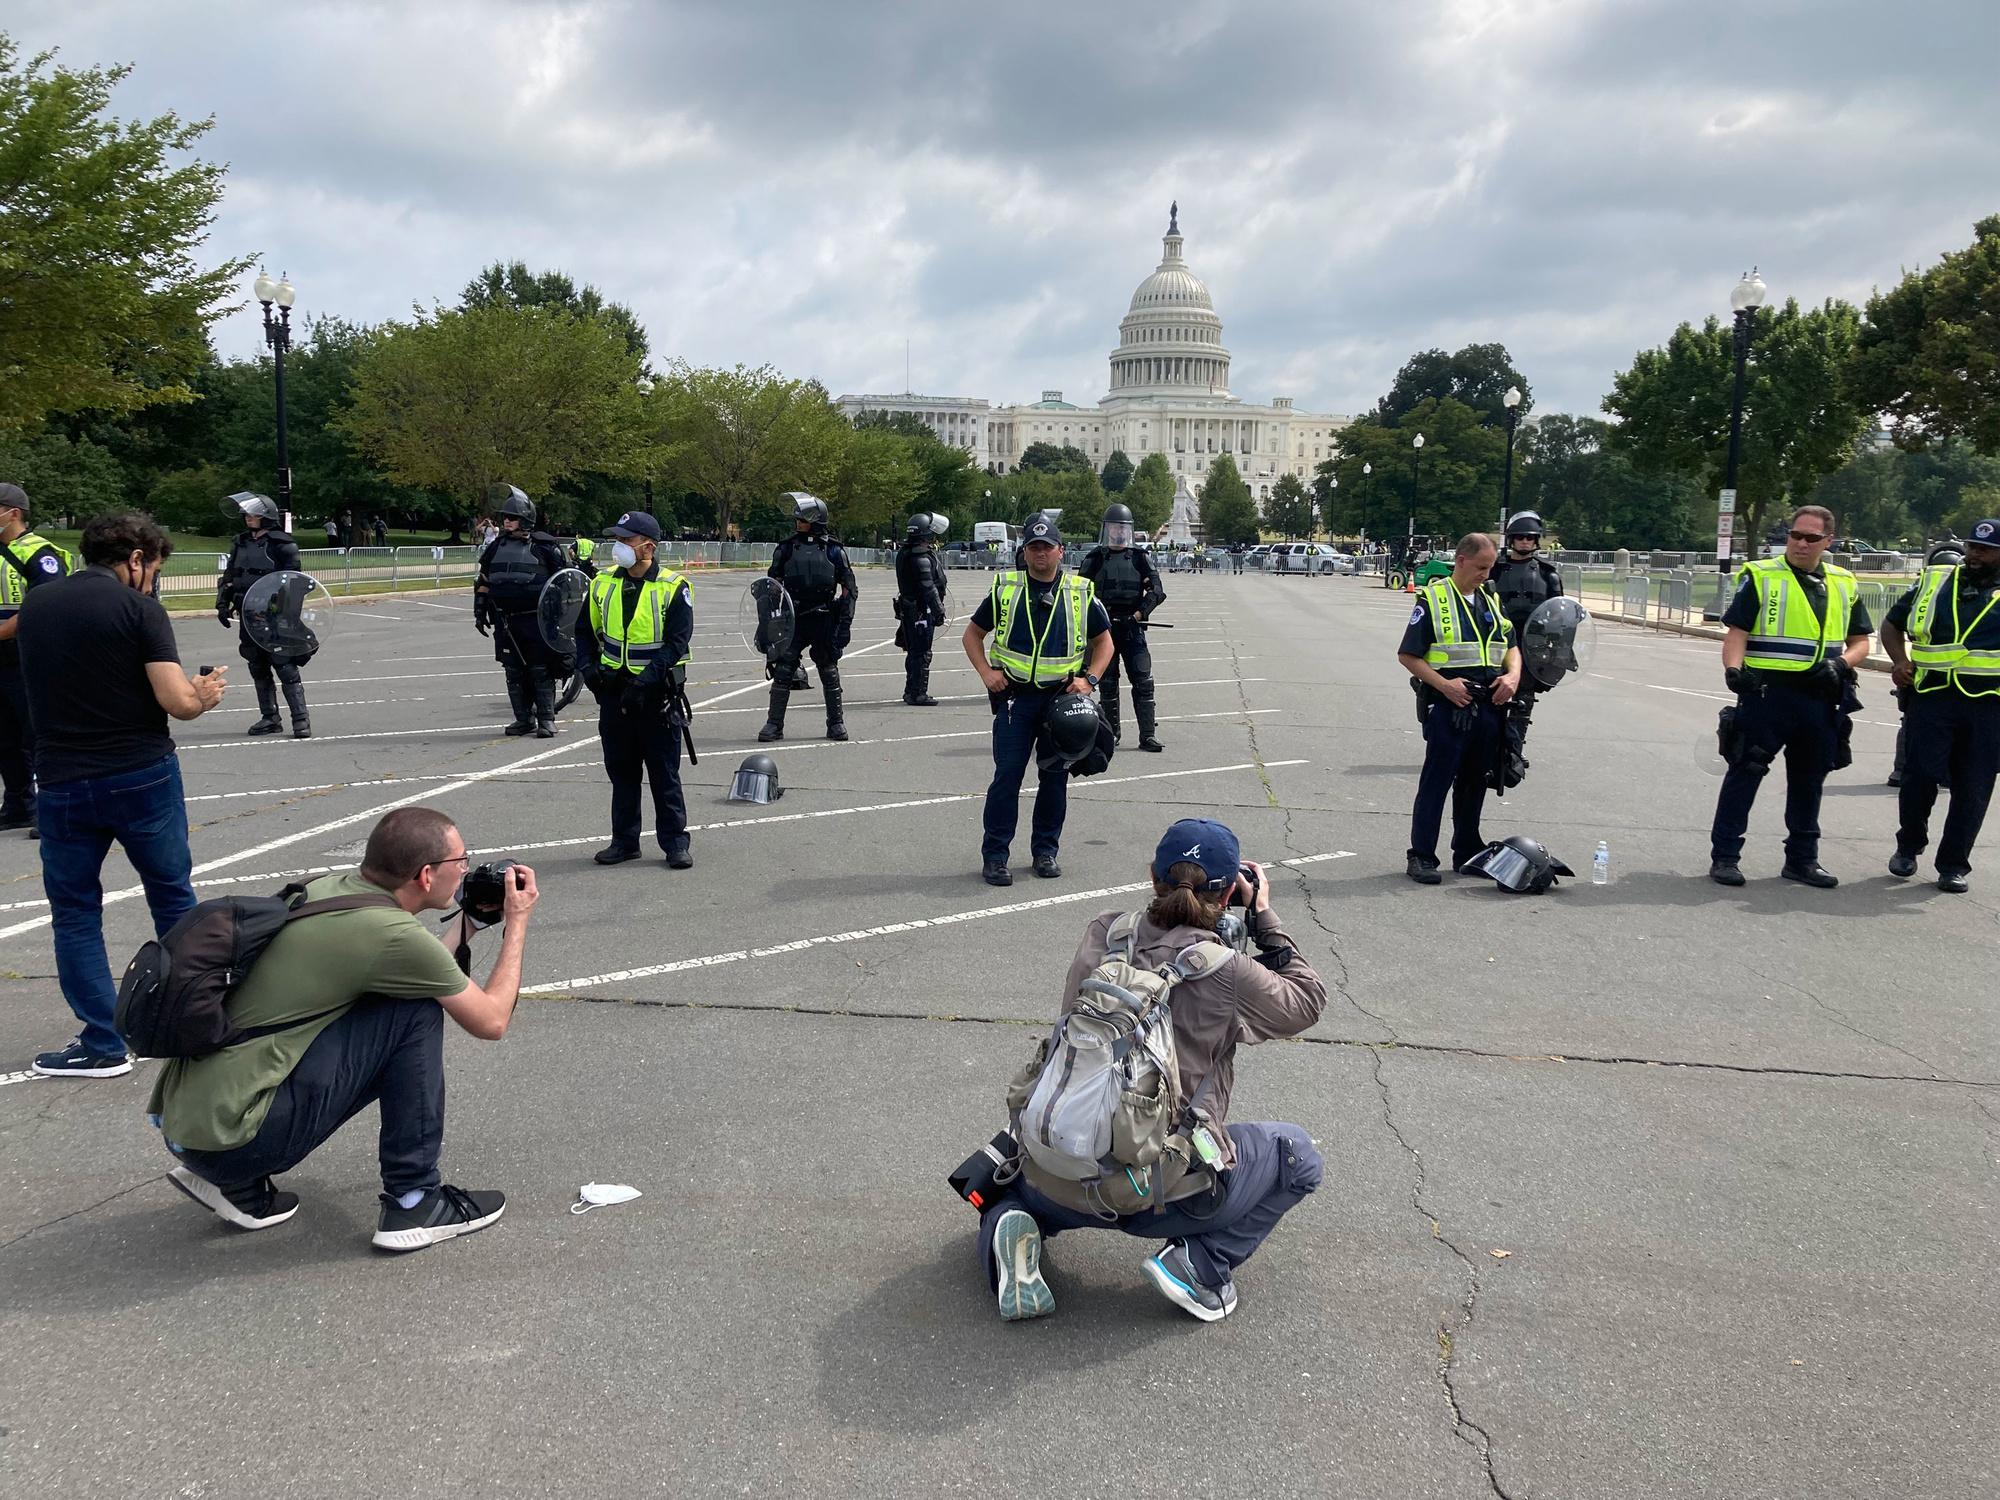 Meer politie om te fotograferen dan betogers